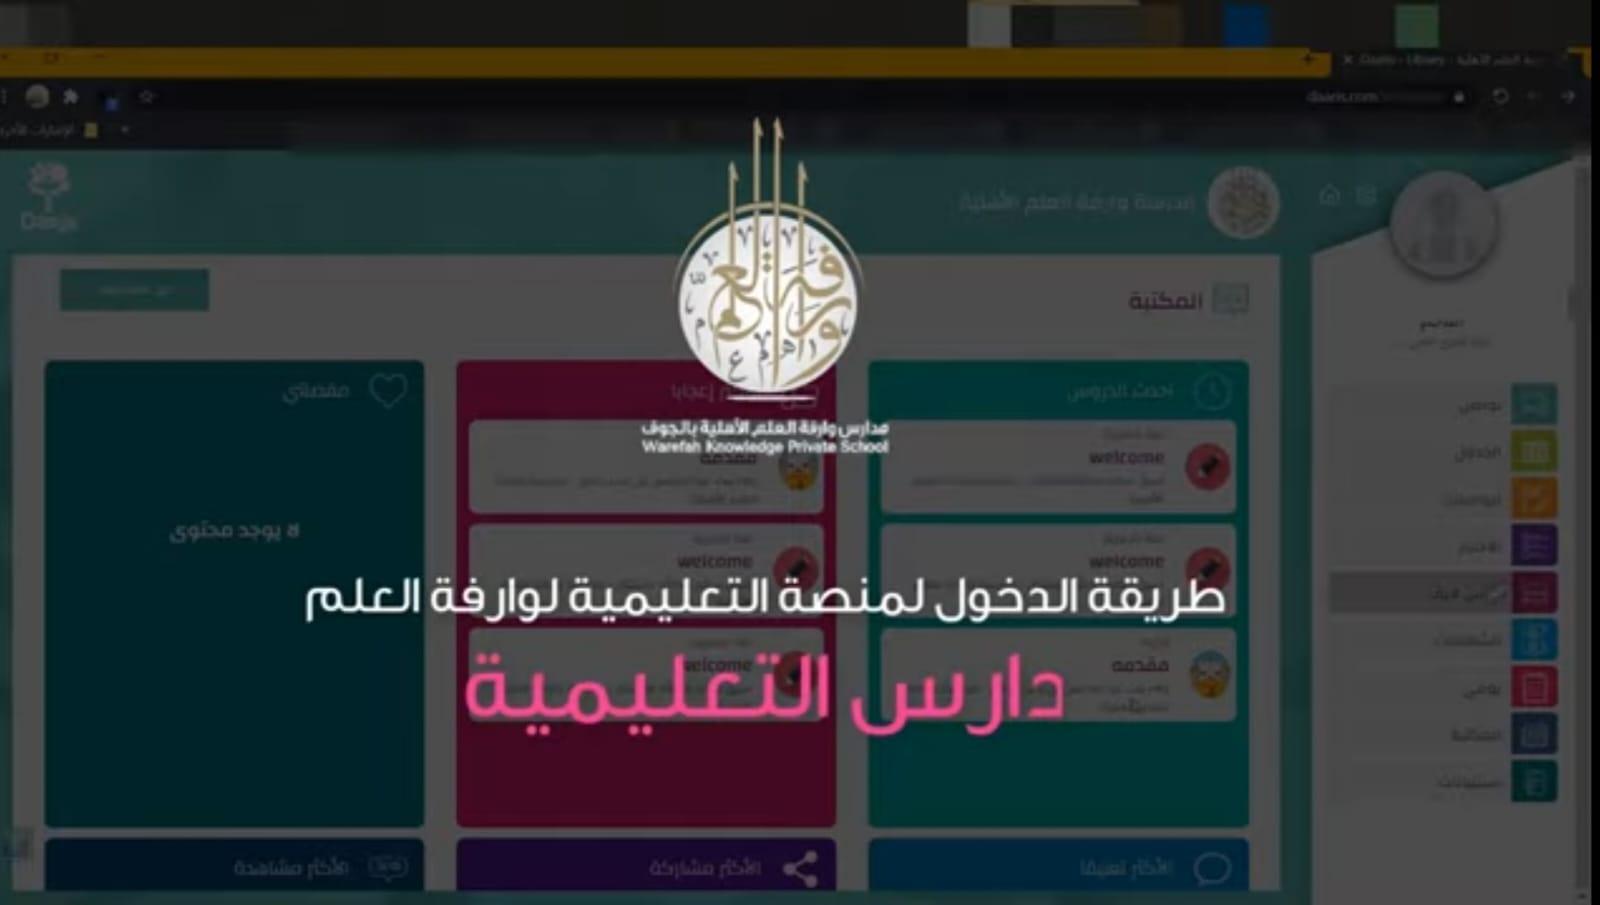 (العربية) طريقة الدخول لمنصة وارفة العلم الإالكترونية ( دارس التعليمية )